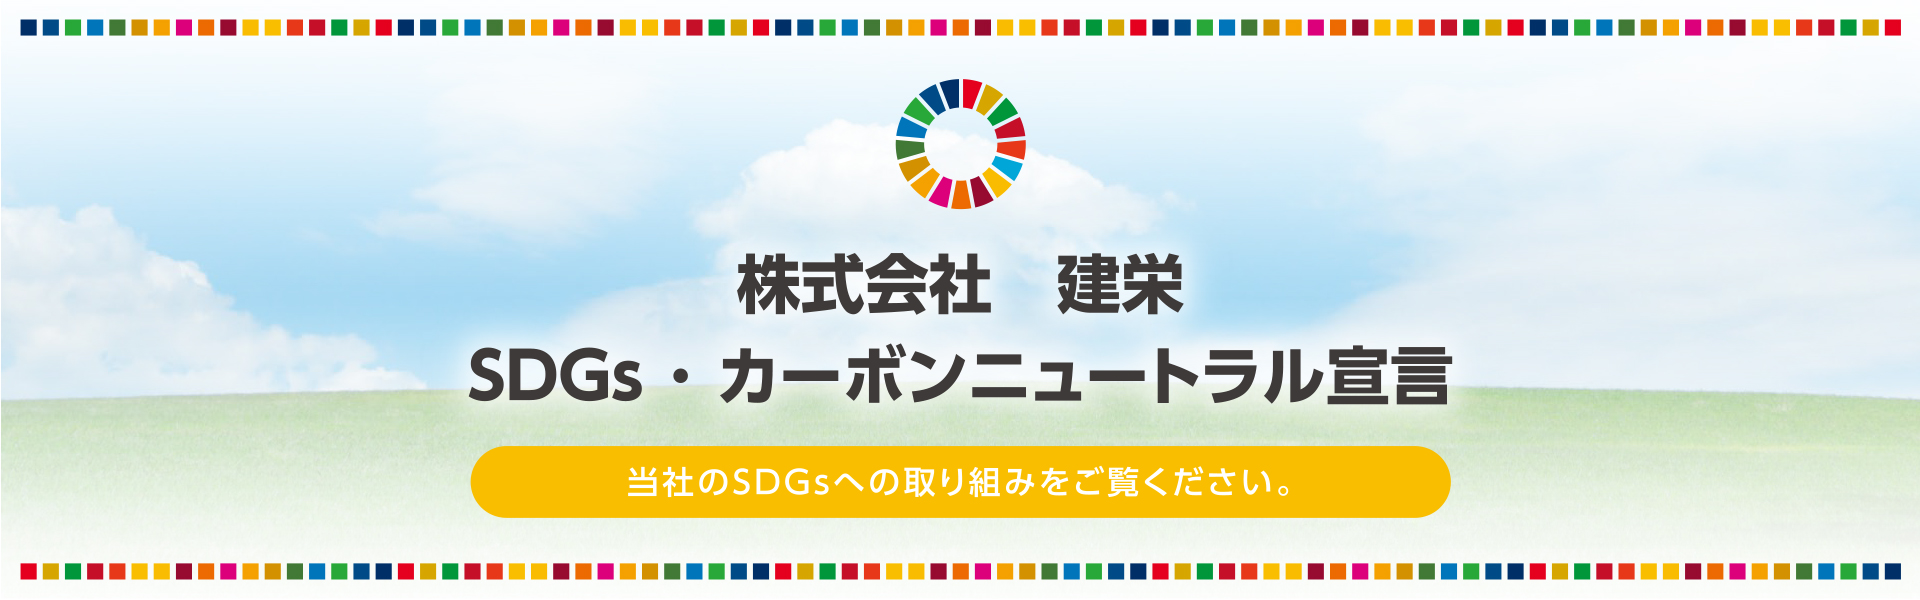 株式会社 建栄 SDGs･カーボンニュートラル宣言